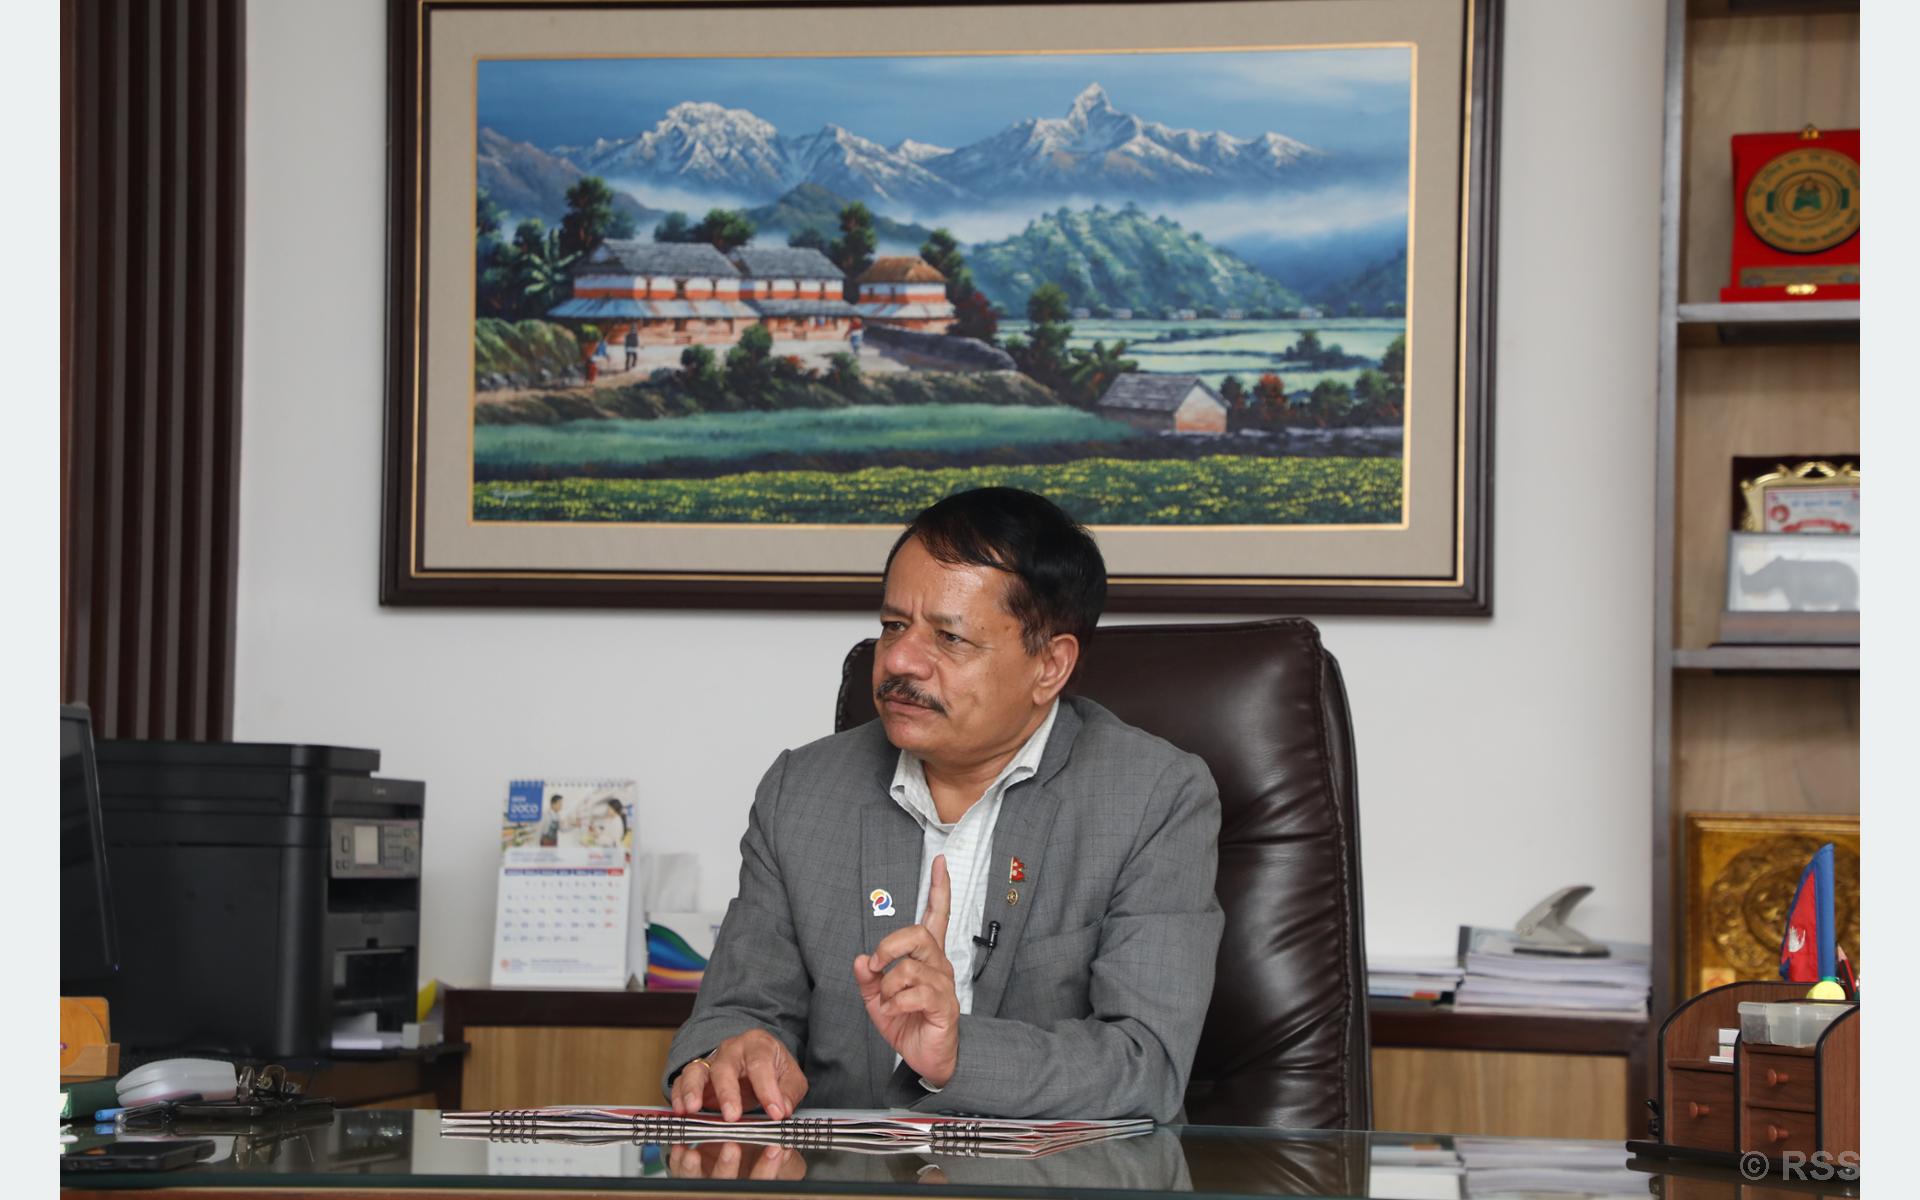 ठूला भौतिक पूर्वाधारमा लगानी गर्न हामी तत्पर छौँ : रमण नेपाल, कार्यकारी निर्देशक